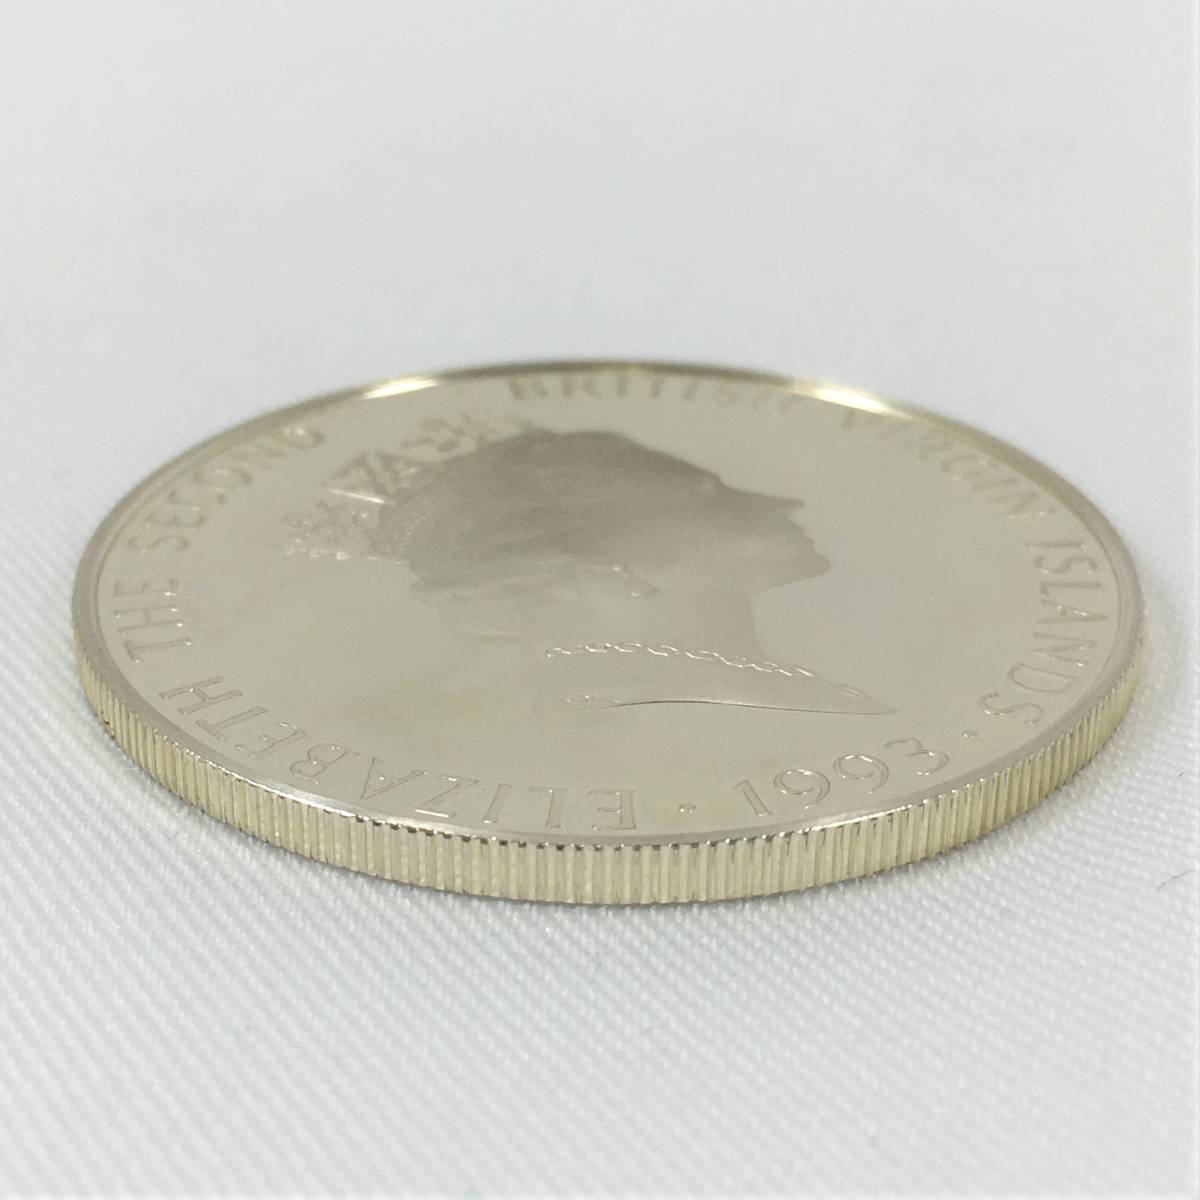 イギリス領ヴァージン諸島 25ドル 銀貨 1993年 ユキヒョウ SV925 プルーフ コイン 硬貨 エリザベス女王 英領バージン諸島 ケース付の画像7